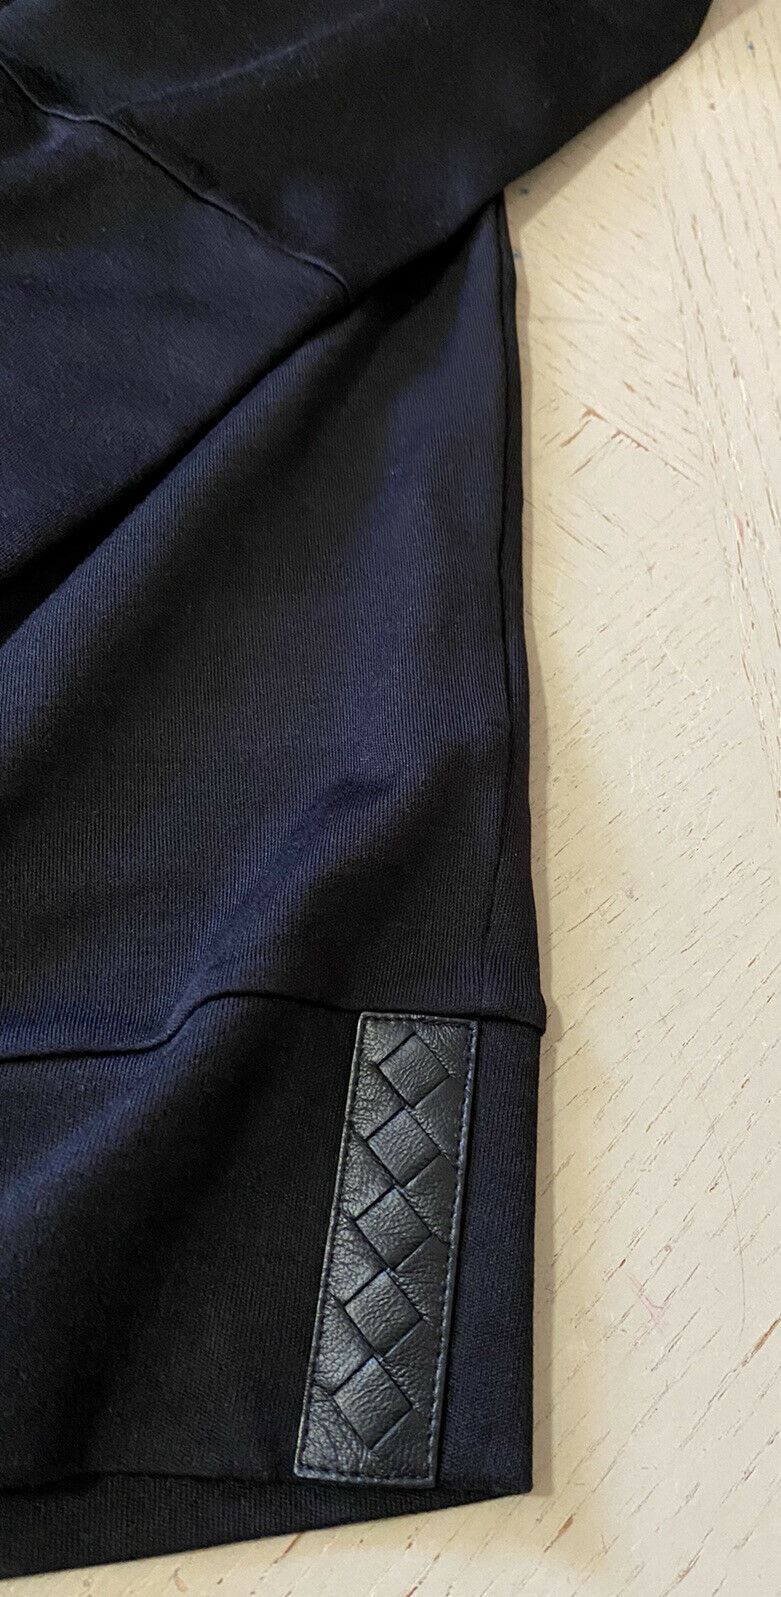 Новая мужская роскошная футболка из шелкового/хлопкового джерси с длинным рукавом Bottega Veneta стоимостью 550 долларов M/50 E